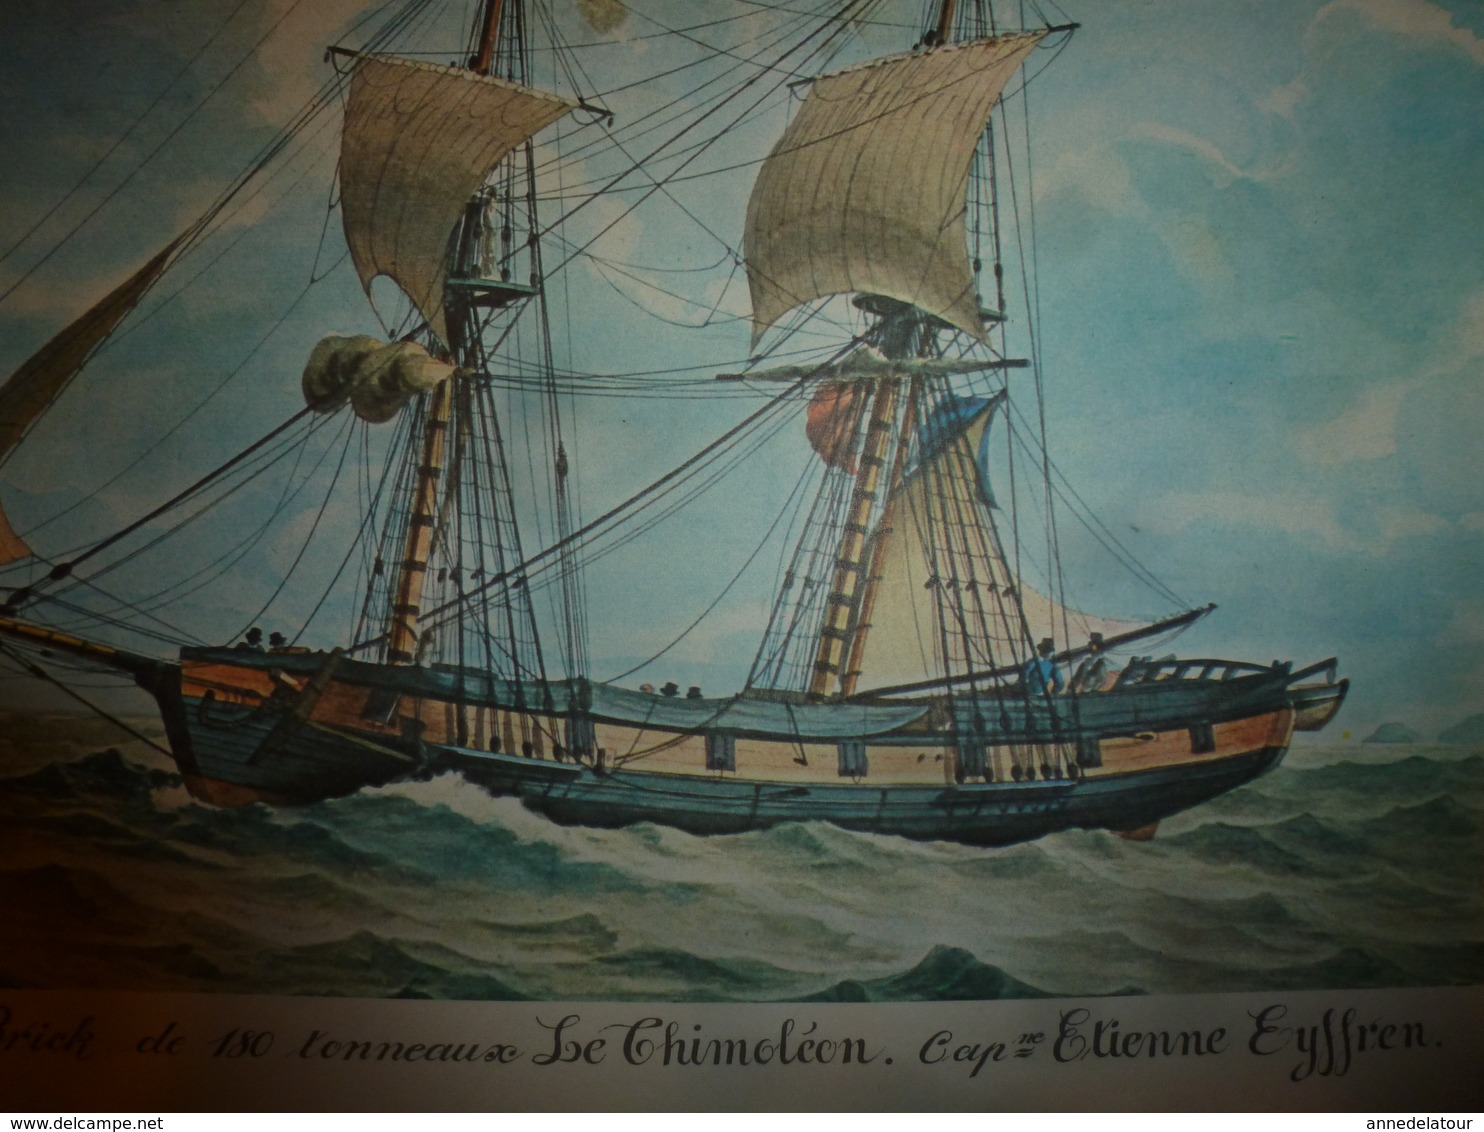 Brick De 180 Tonneaux LE THIMOLEON, Capitaine Eyffren  (Portrait Navire  ,dimension Hors-tout = 48cm X 36cm - Maritime Dekoration